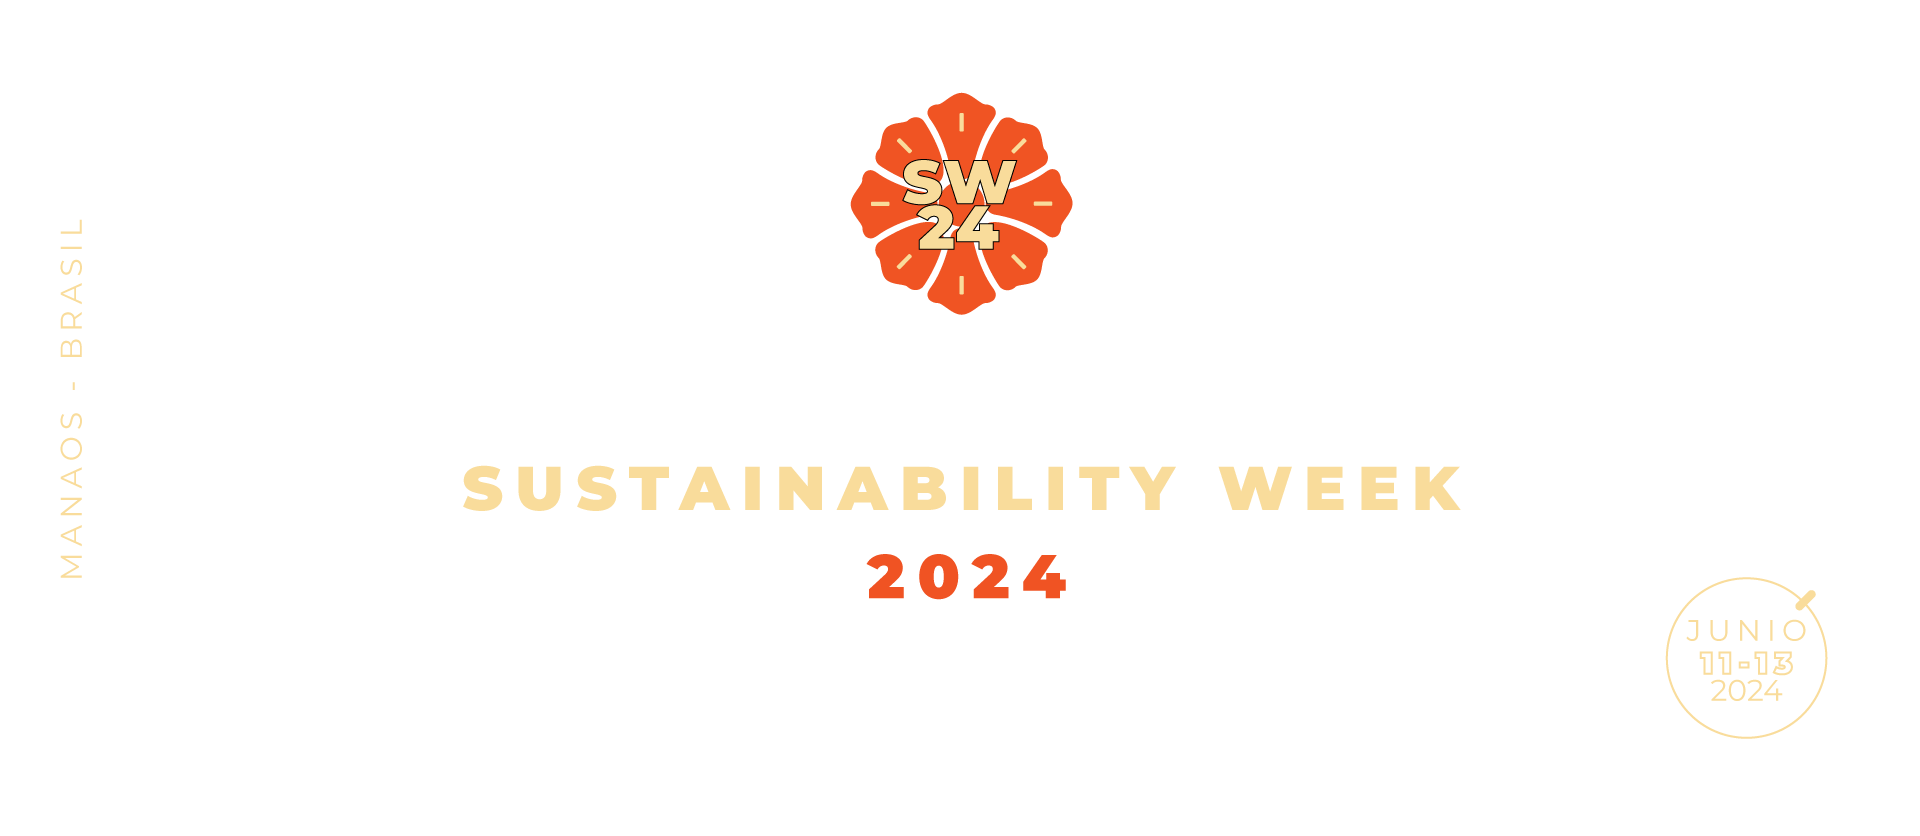 Sustainability Week 2024 logo